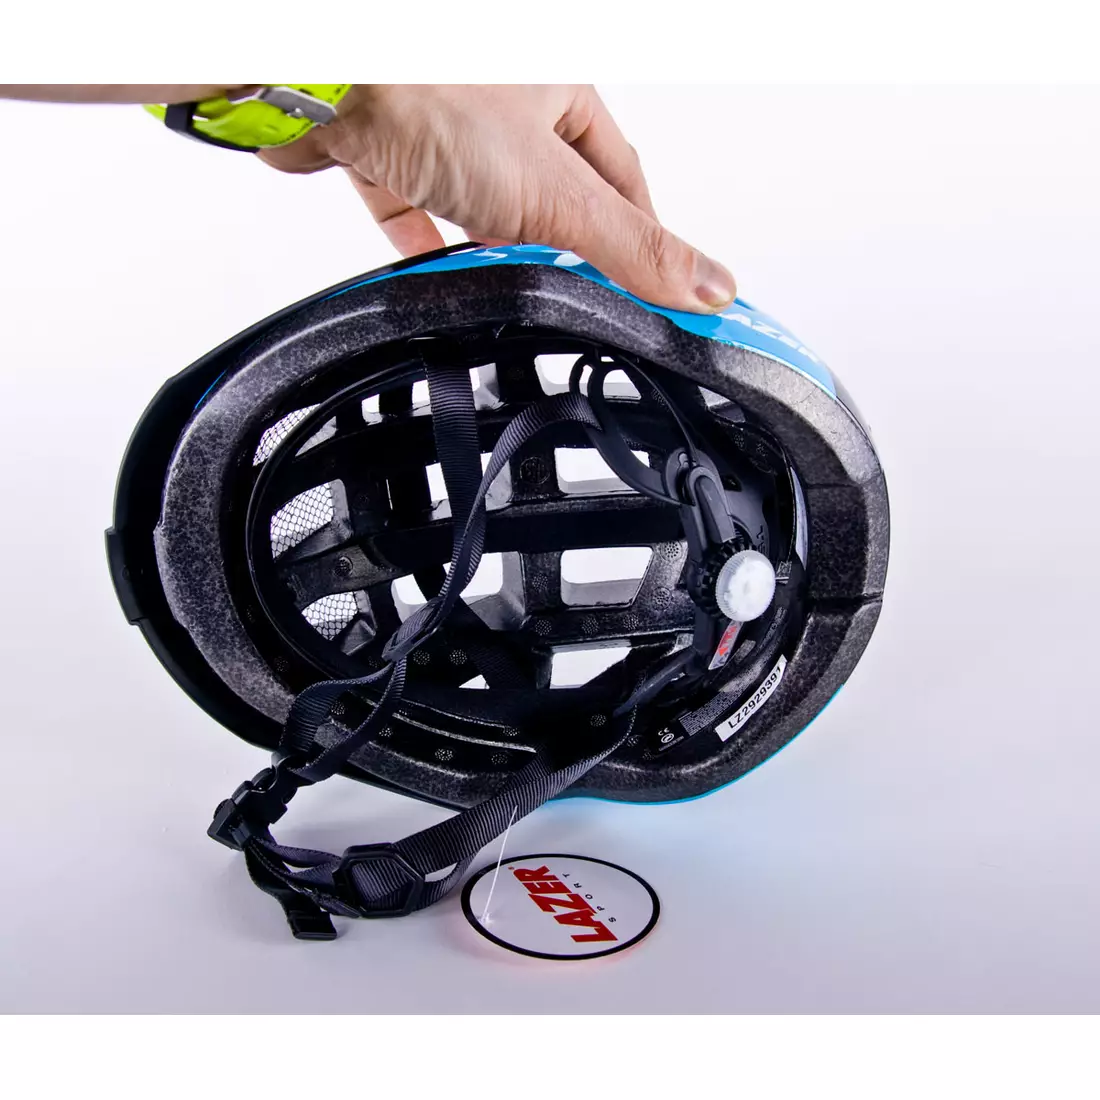 LAZER Compact DLX cyklistická helma LED síťka proti hmyzu modrá černá lesklá